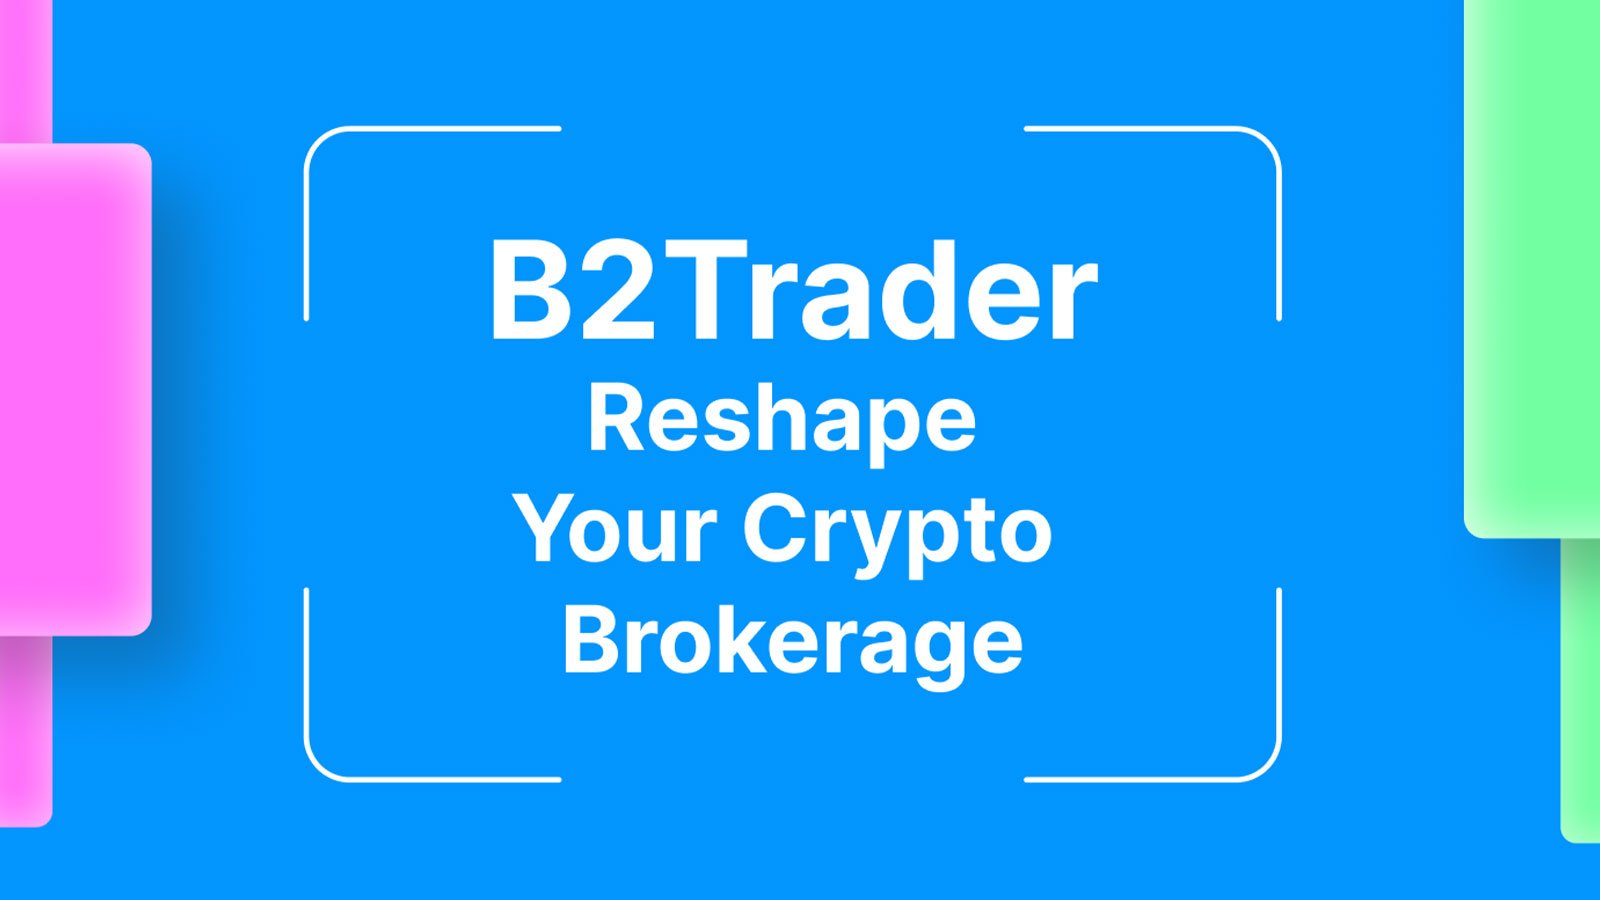 B2Broker's $5 Million-Worth Innovation is Here - Meet B2Trader Brokerage Platform (BBP)